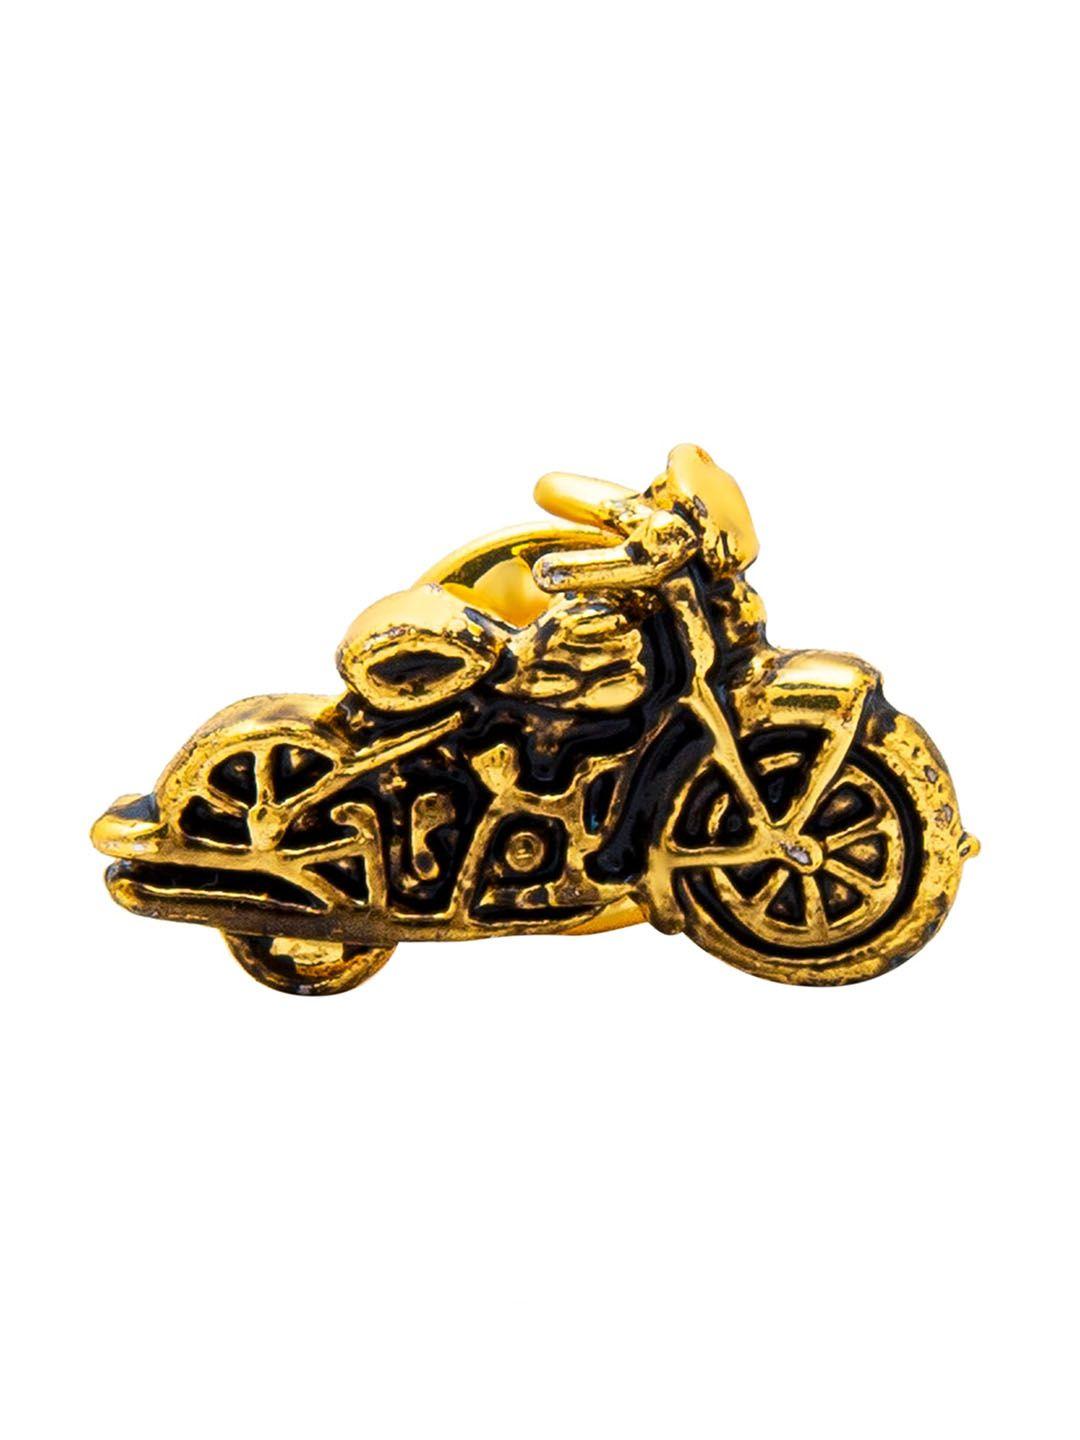 shining jewel - by shivansh men gold-toned antique bike brooch lapel pin